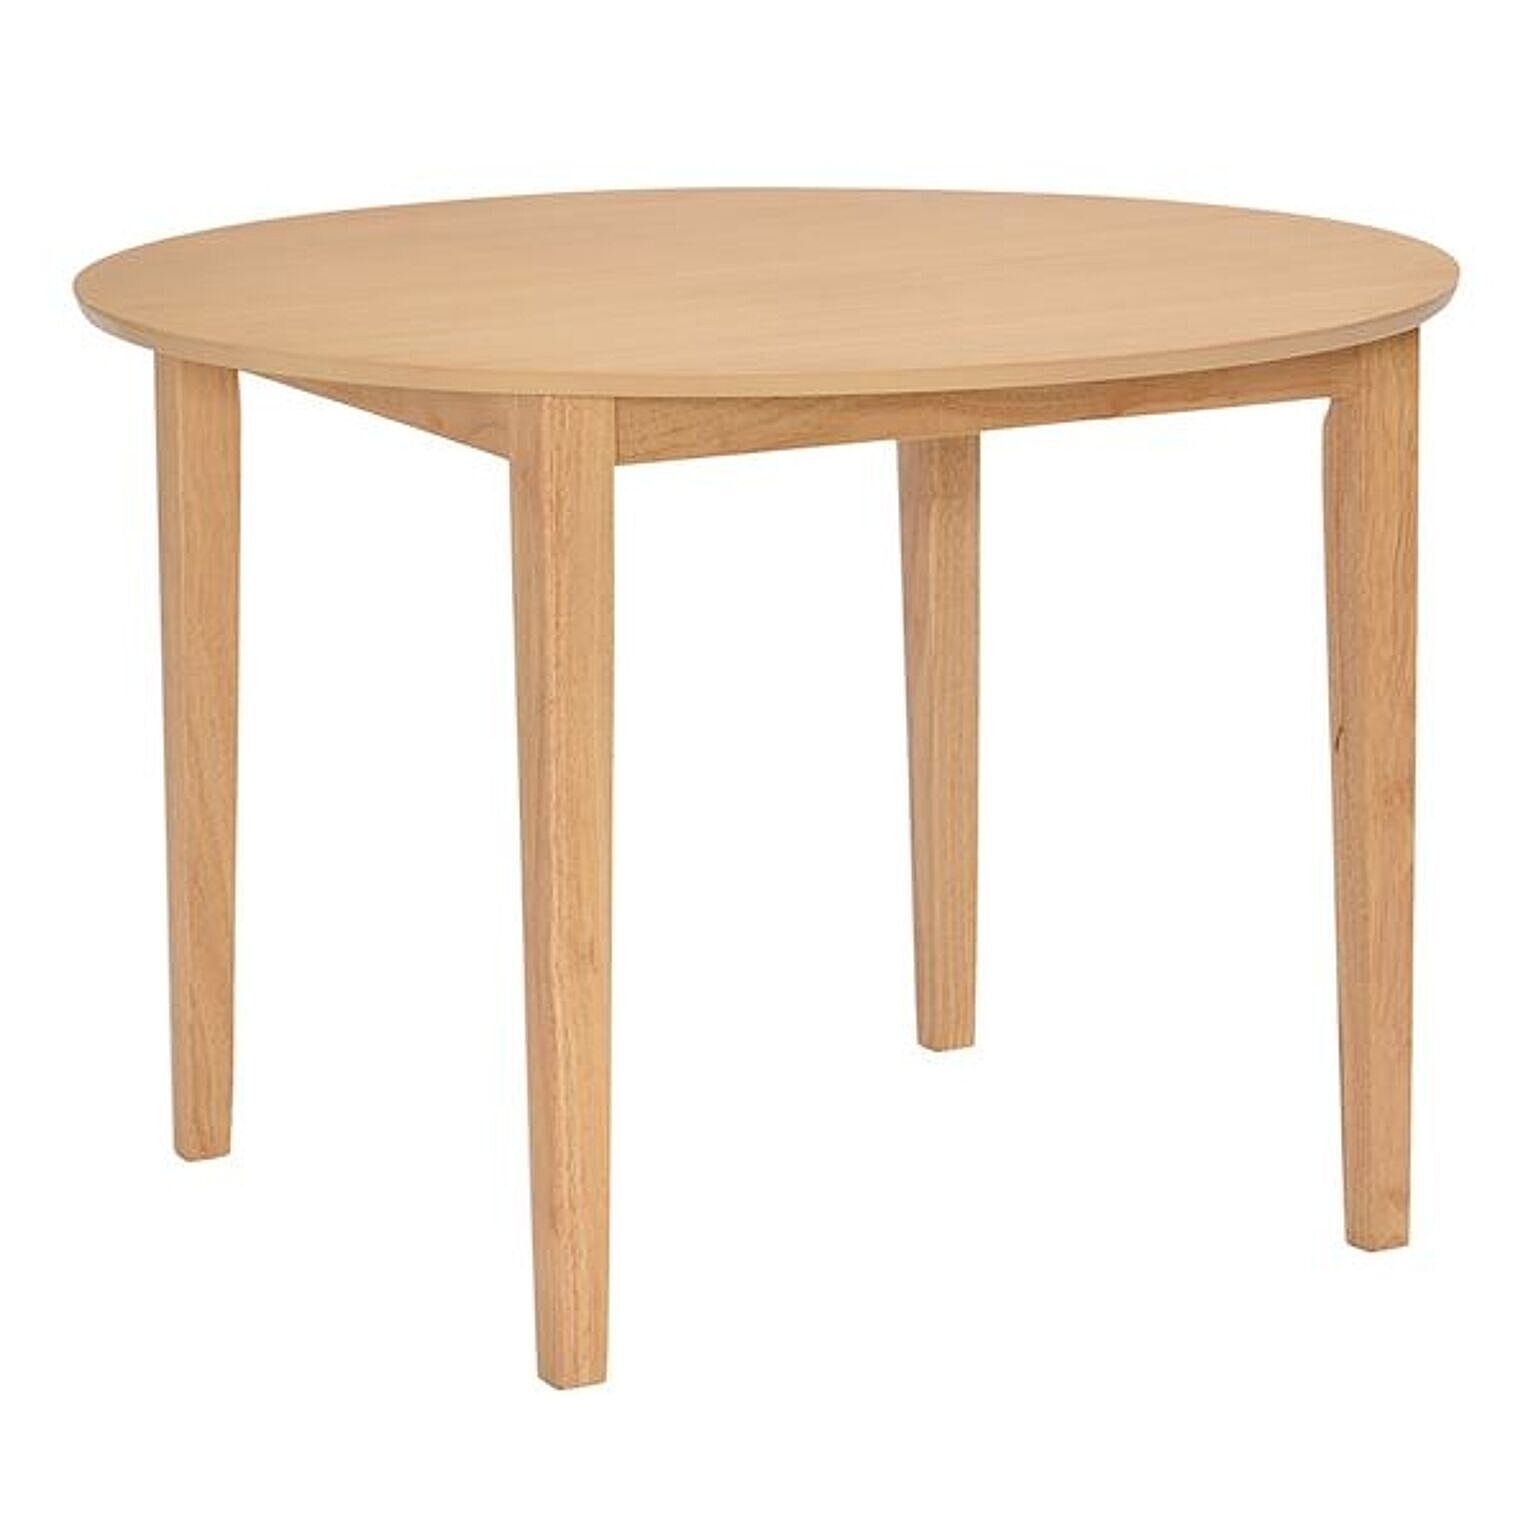 【単品】 円形 ダイニングテーブル 100×100cm 木製